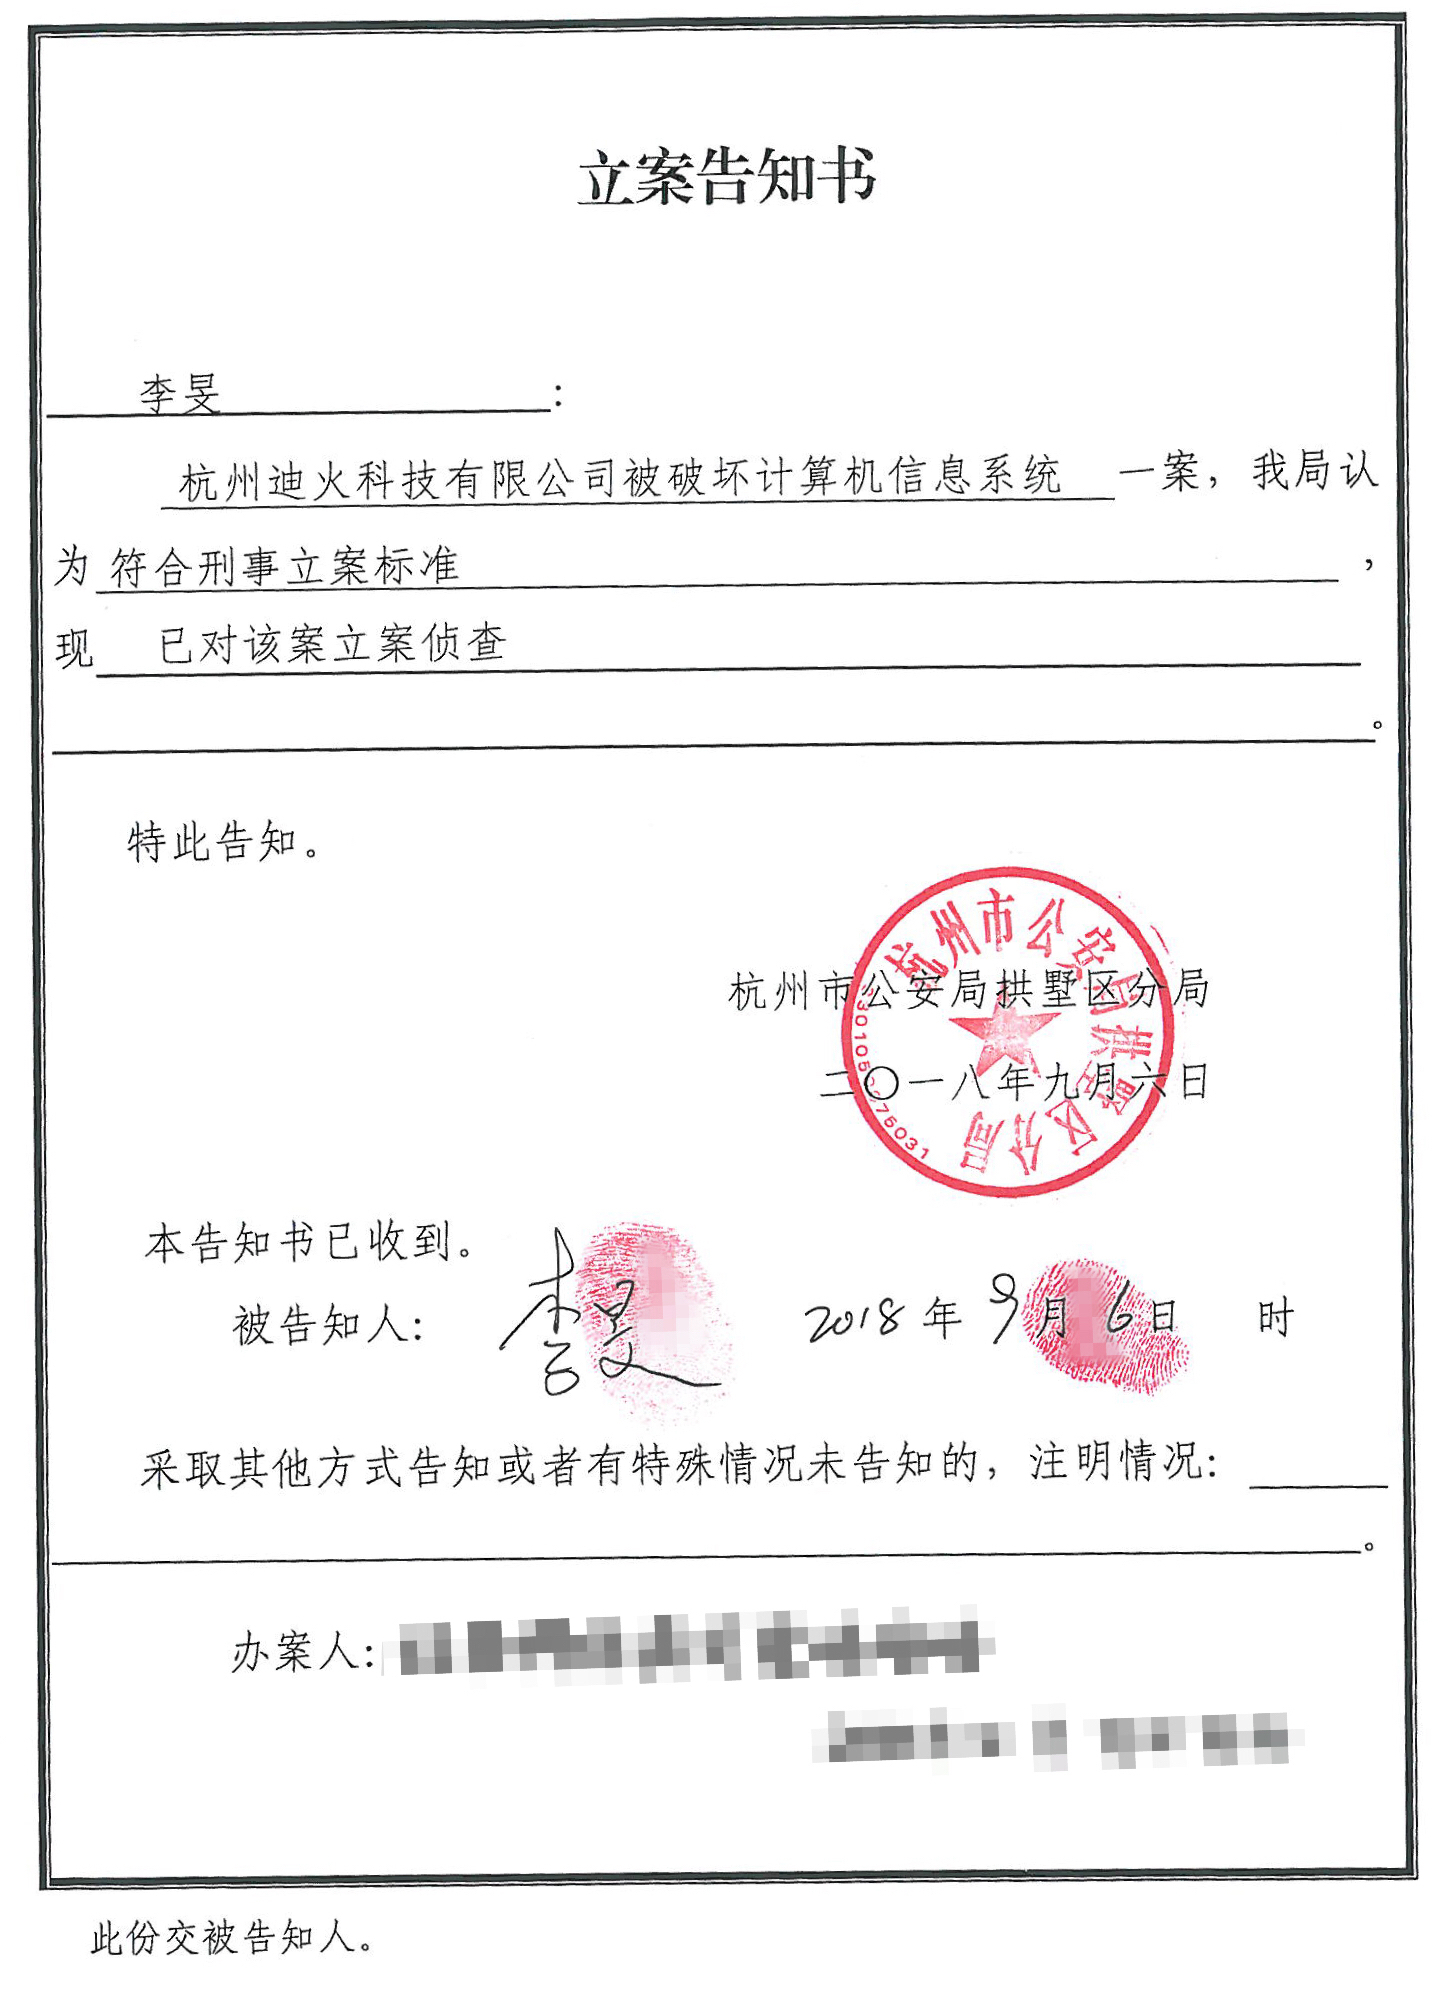 爆料|美团涉嫌破坏二维火系统 杭州警方已立案侦查